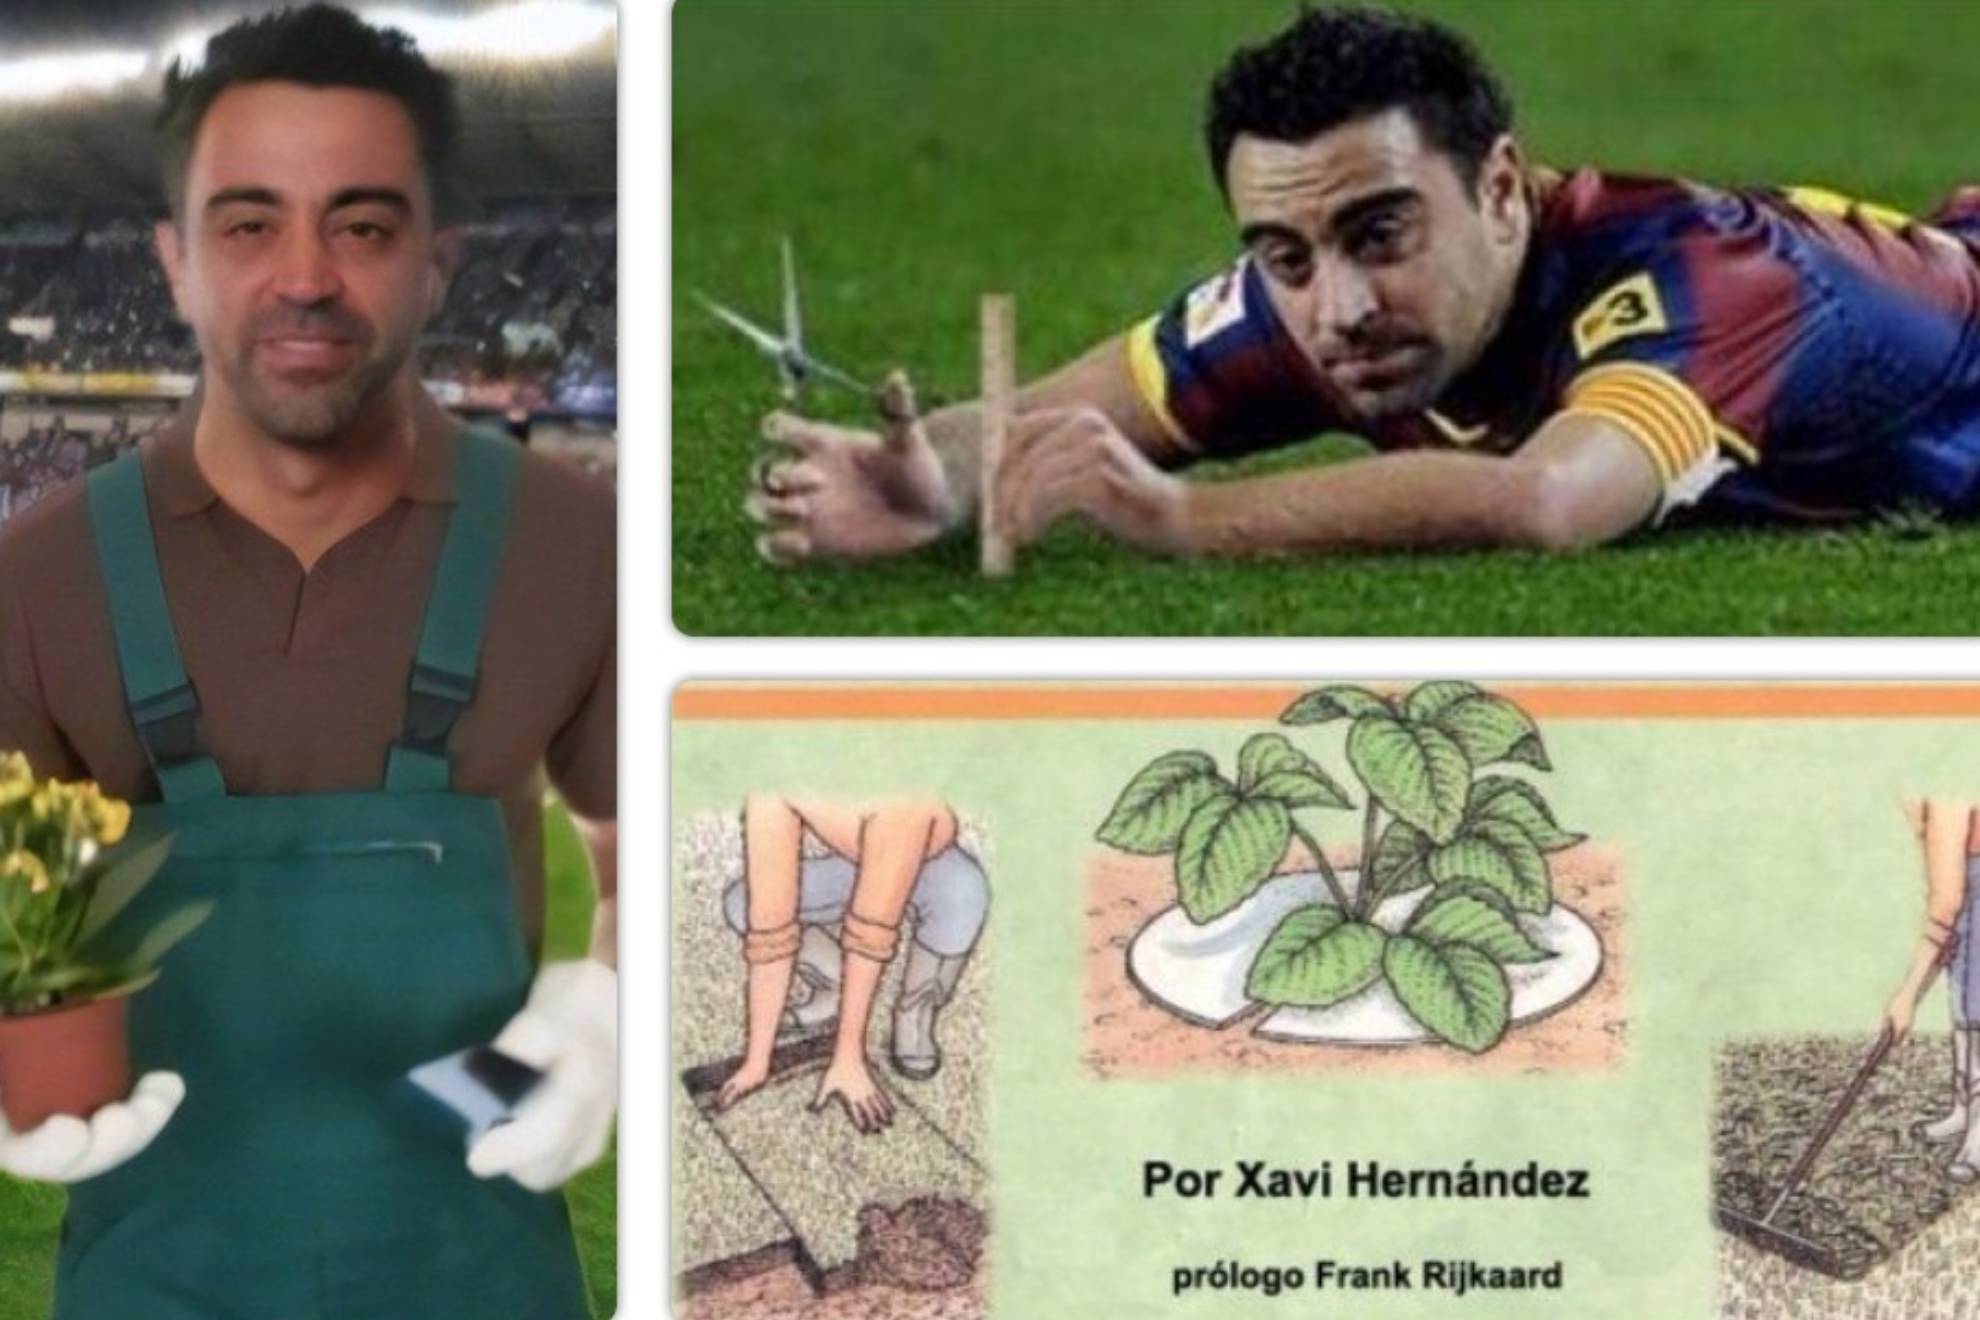 Los memes sobre Xavi Hernndez y su apodo de El Jardinero